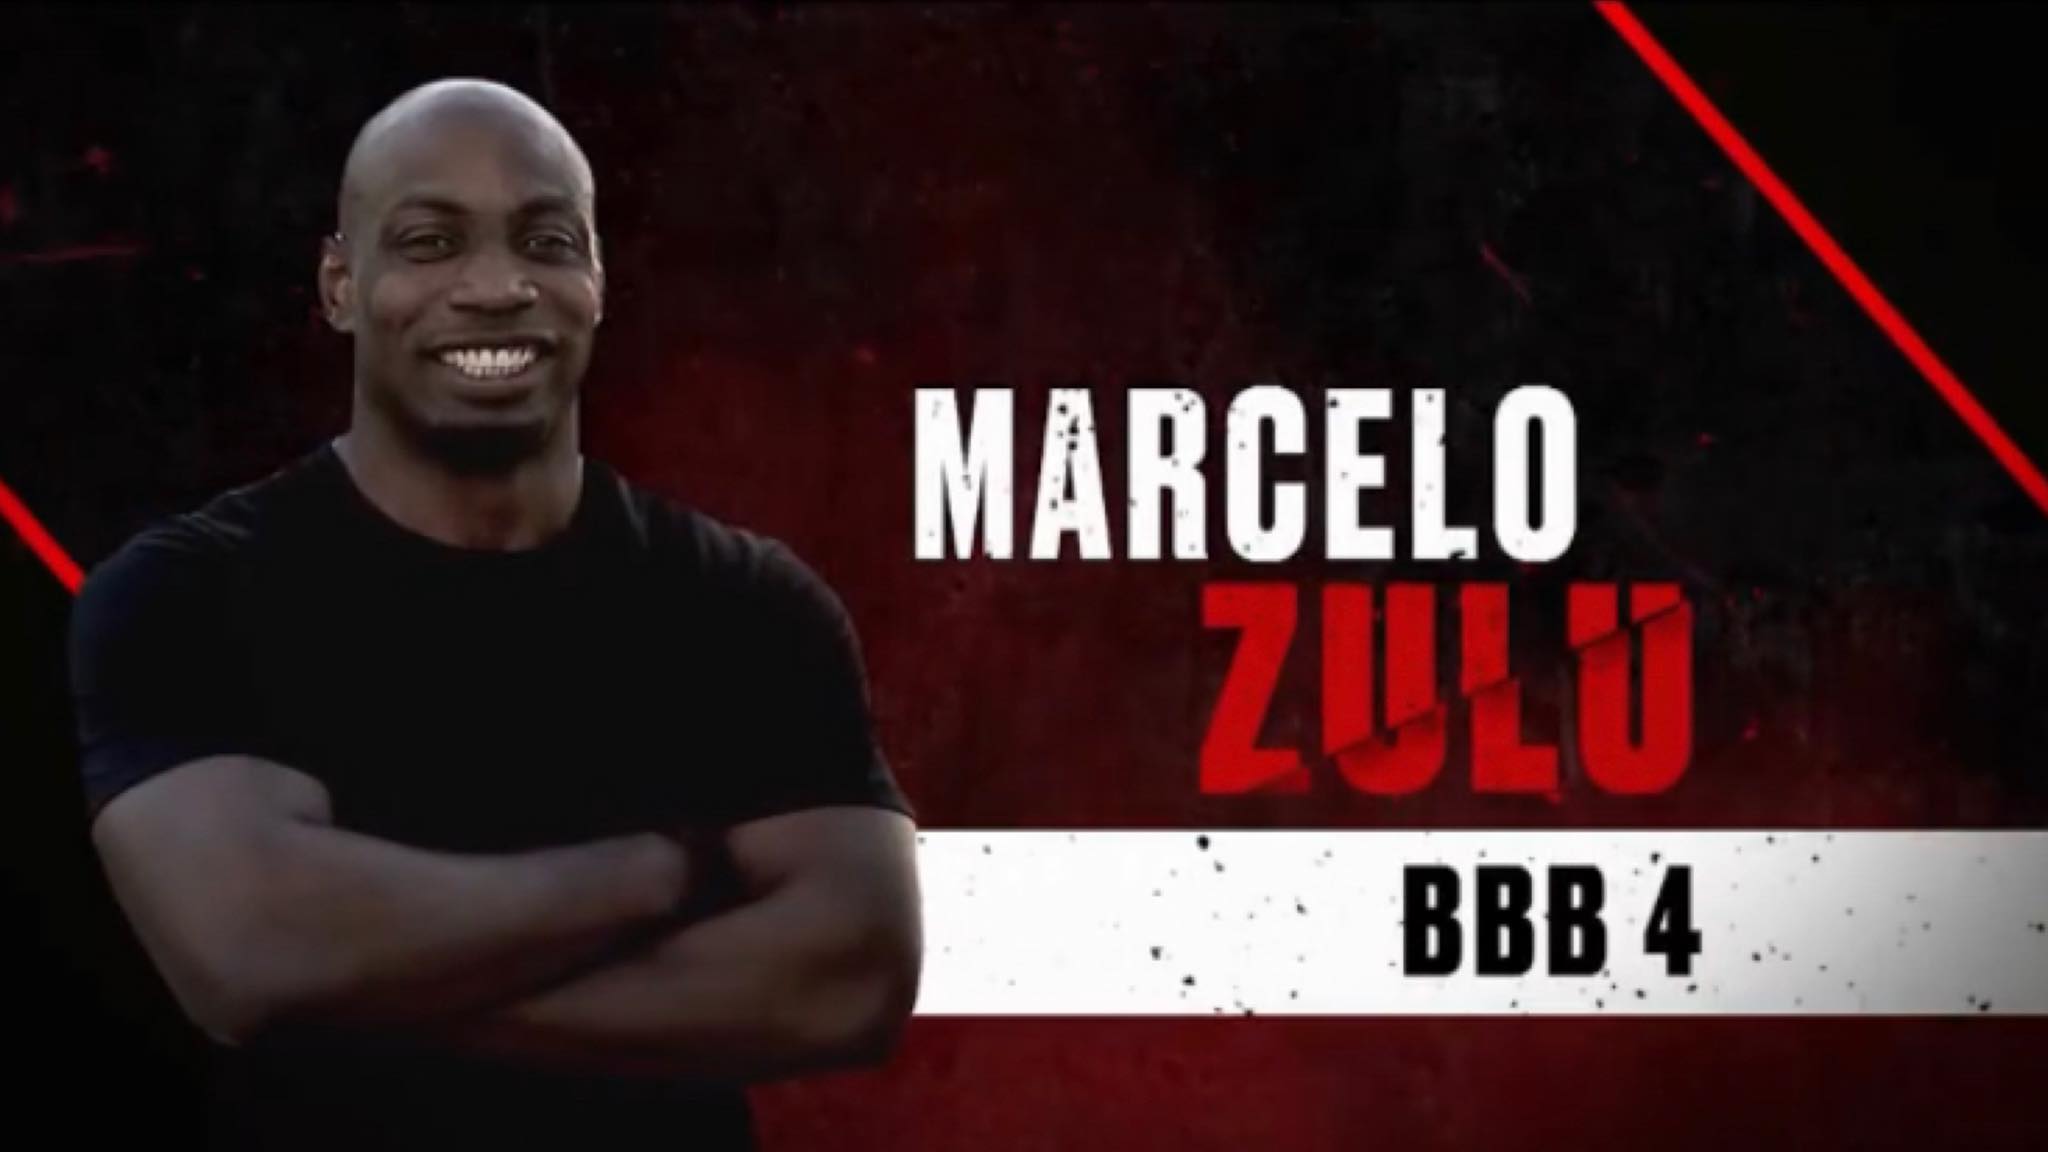 Marcelo Zulu, "vilão" do BBB4 terá a oportunidade de desfazer essa impressão (imagem: divulgação/ Globo)